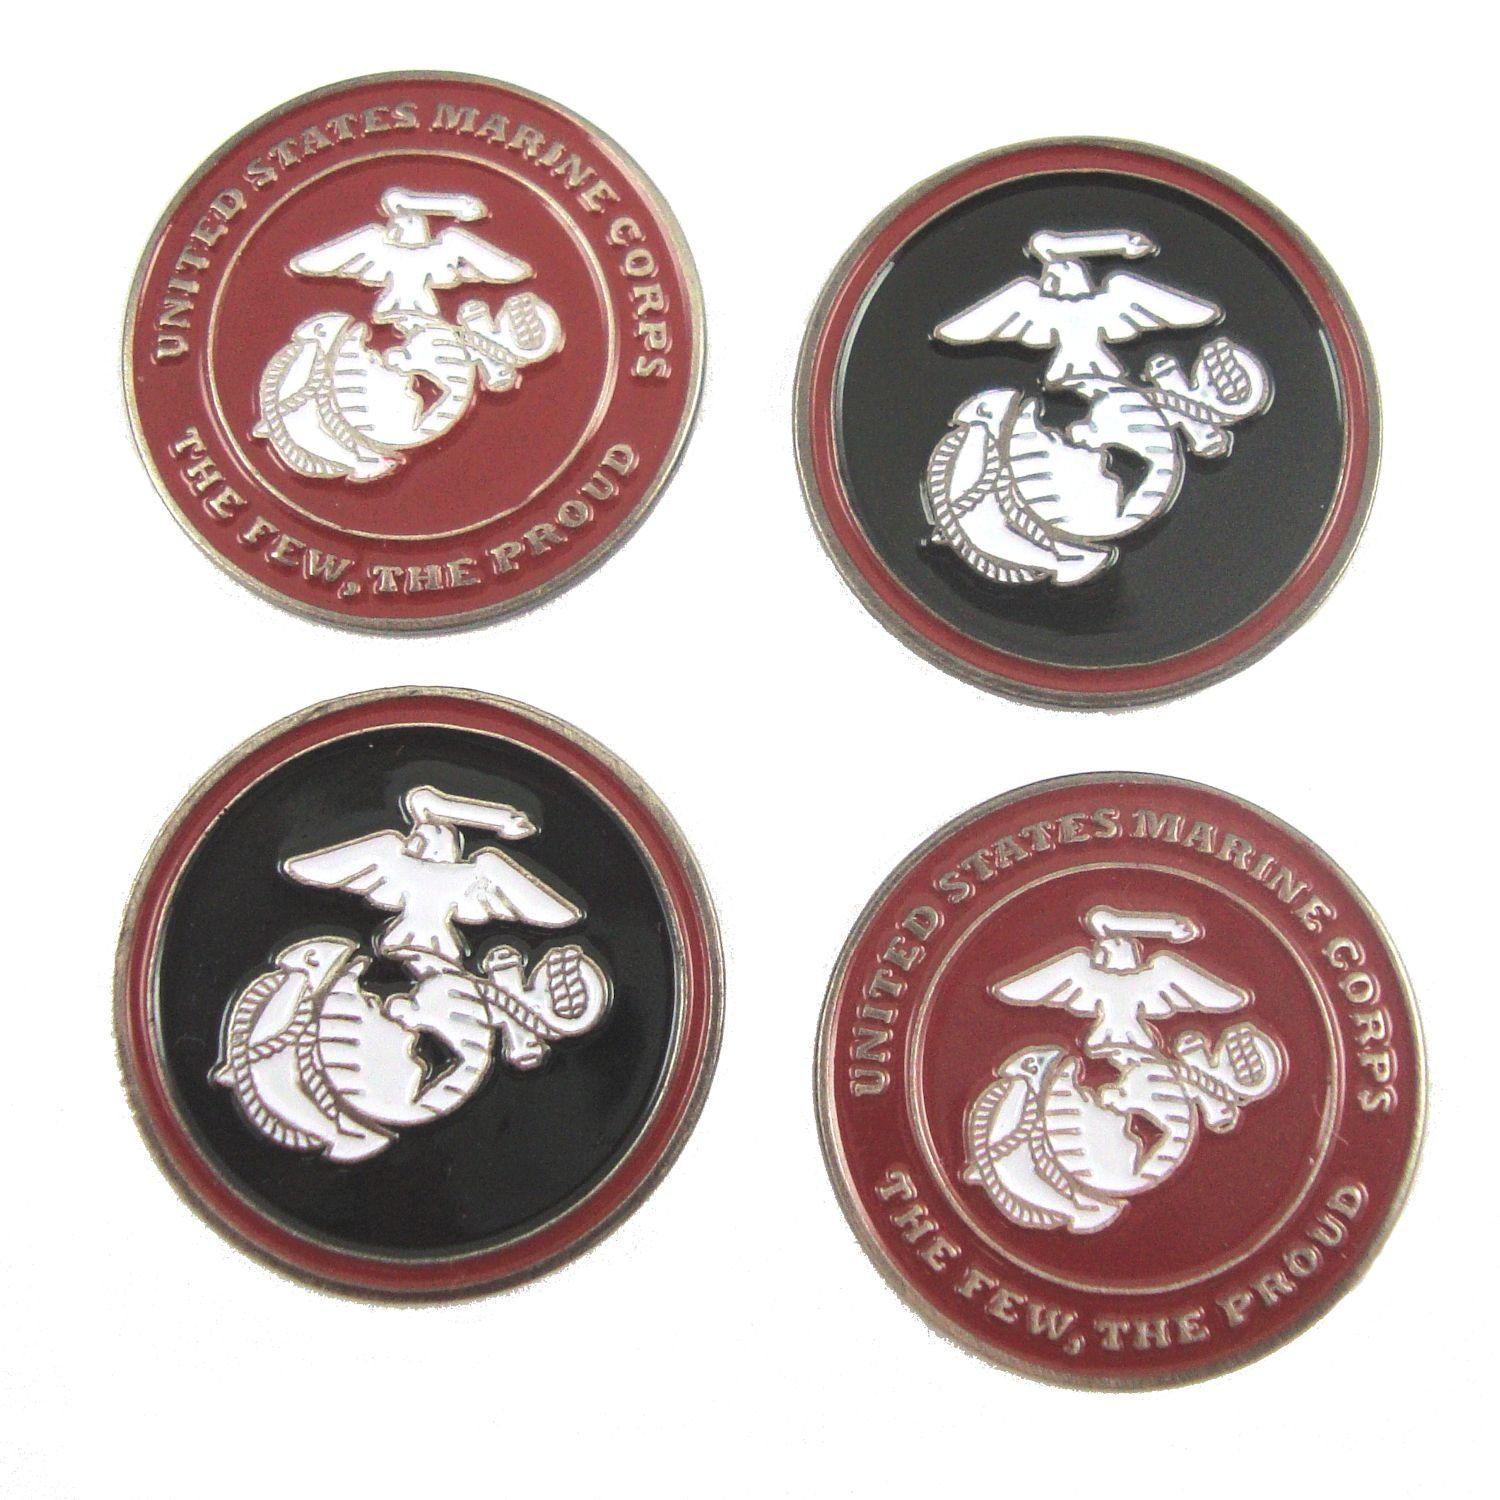 US Marines Logo - Amazon.com : U.S. Marines Double Sided USMC logo Golf Ball Marker ...